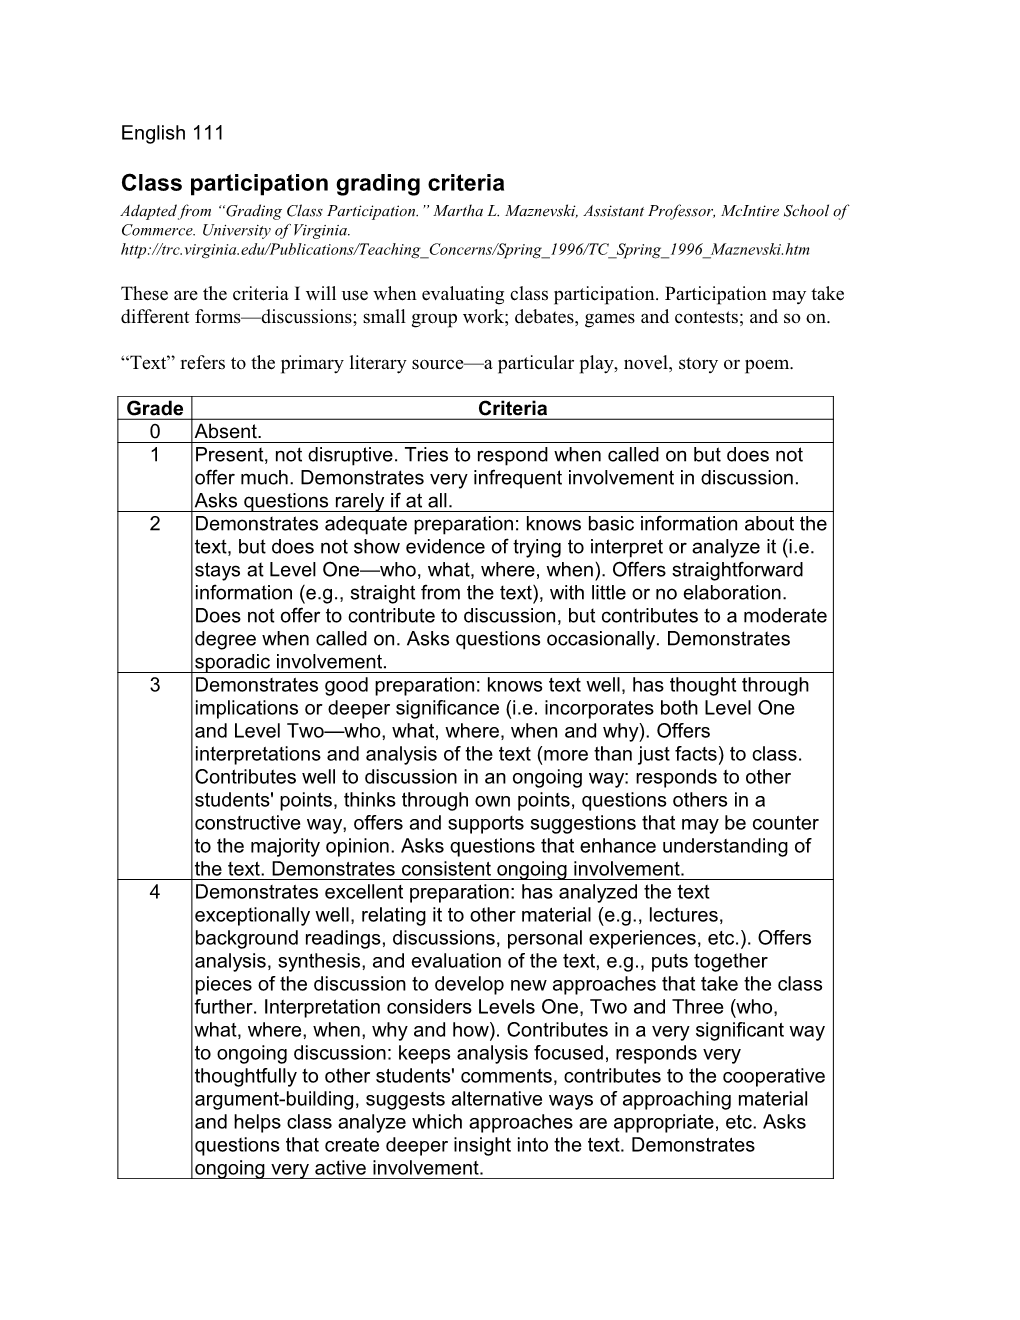 Class Participation Grading Criteria